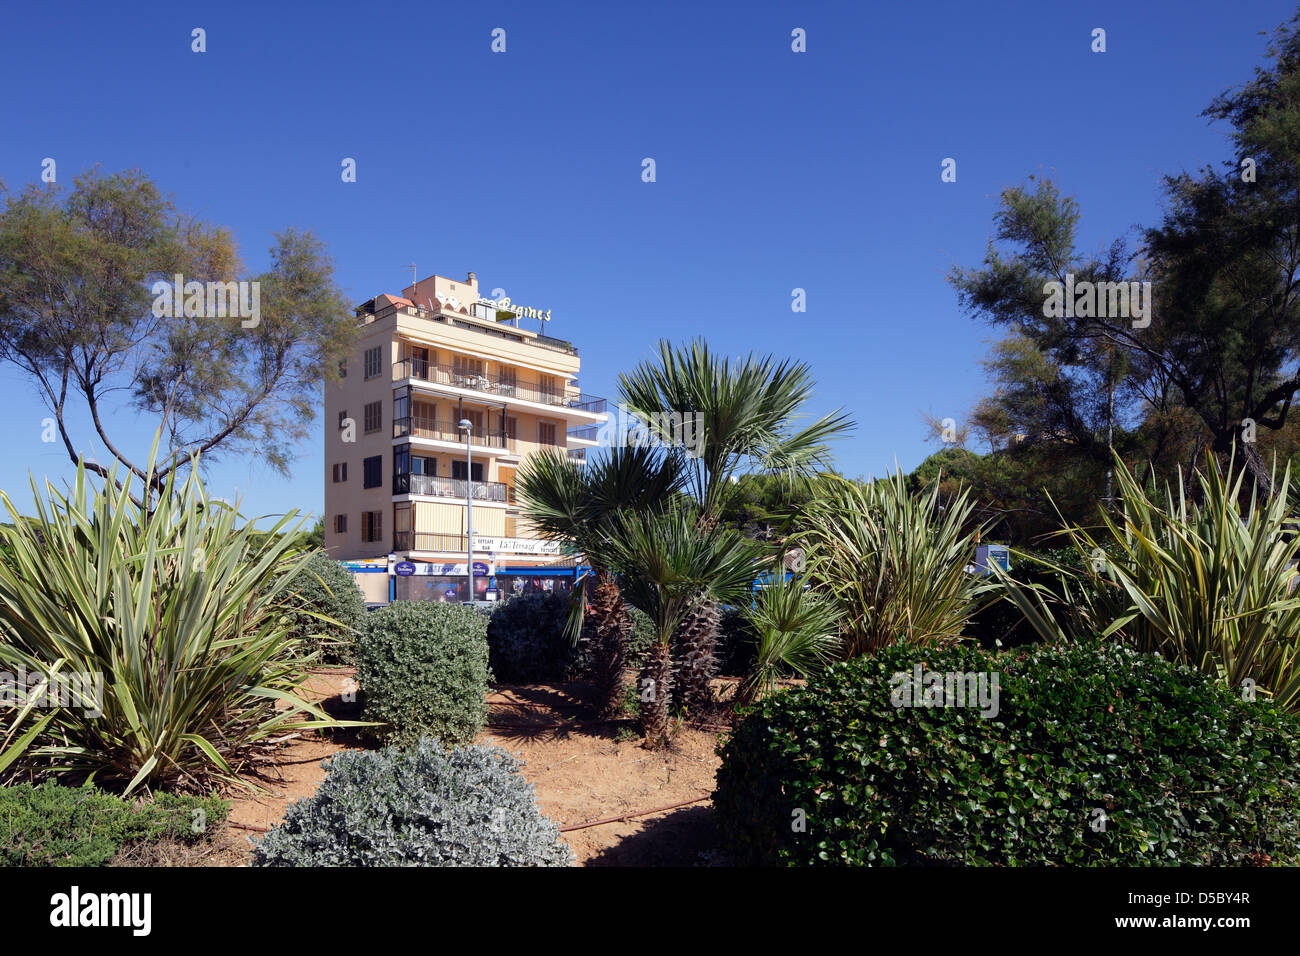 El Arenal, Spain, hotel buildings at Playa de Palma, El Arenal Stock Photo